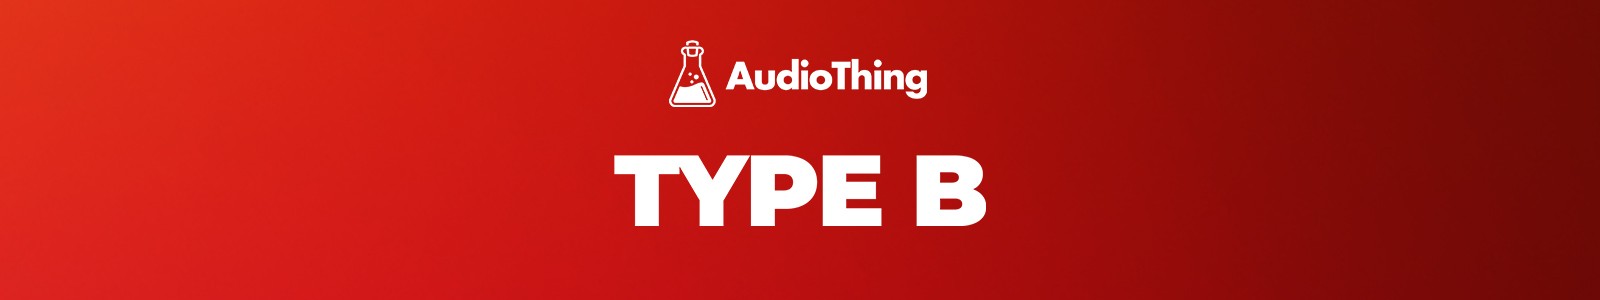 AudioThing Type B